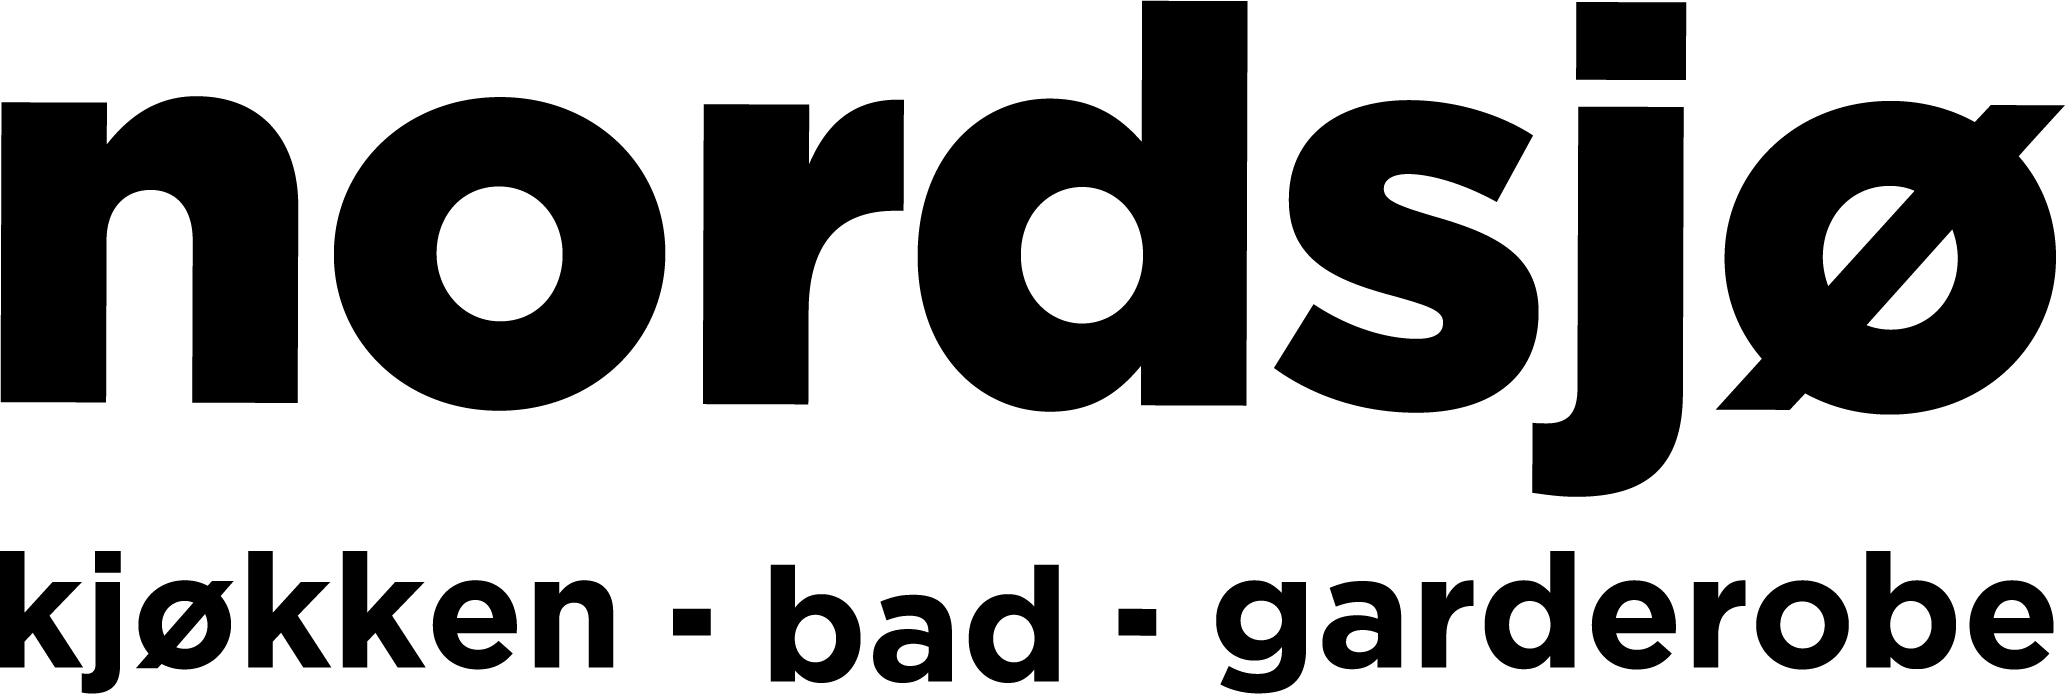 Nordsjo-kjokken-bad-garderobe-logo-sort